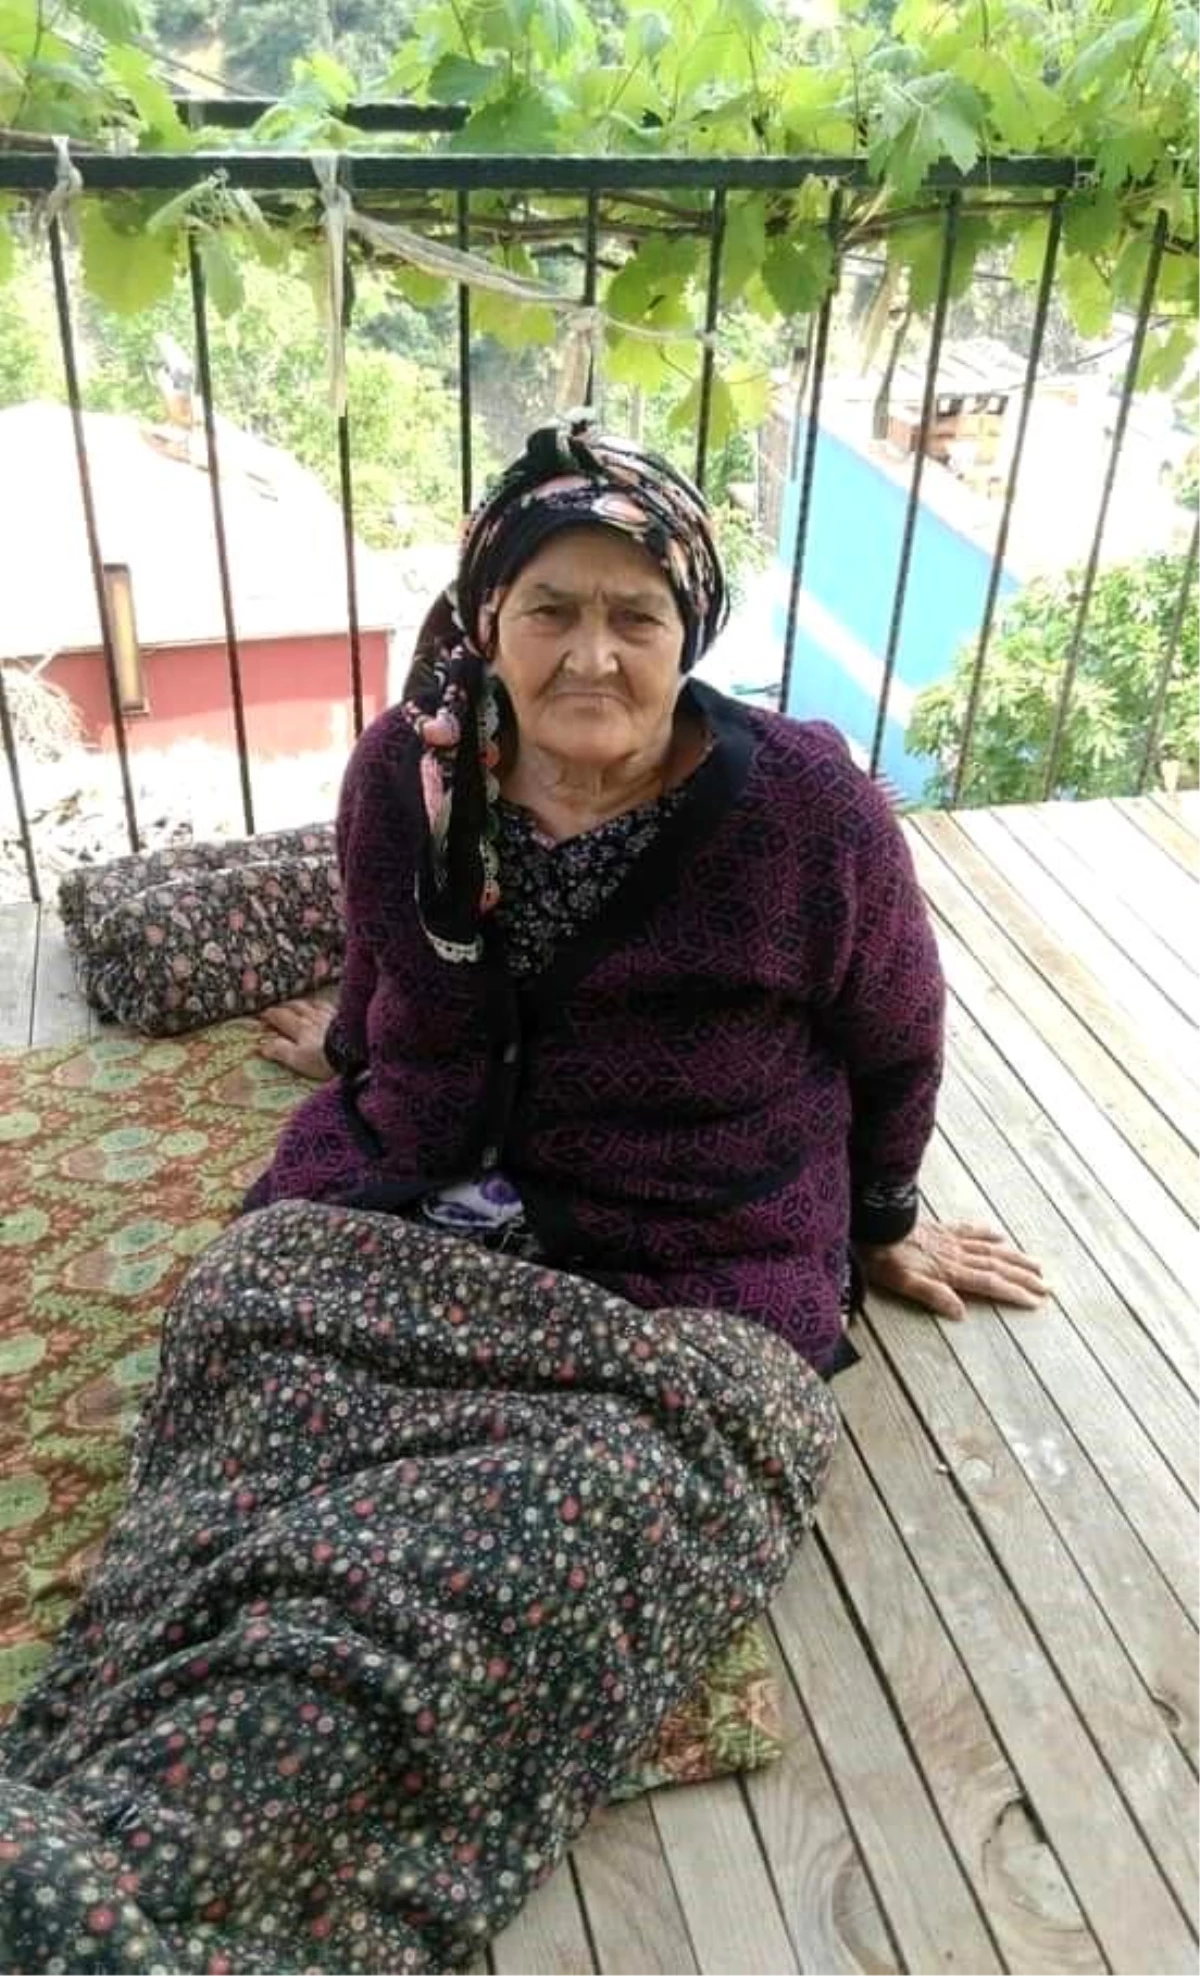 Yaşlı kadın alevlerin arasında hayatını kaybetti